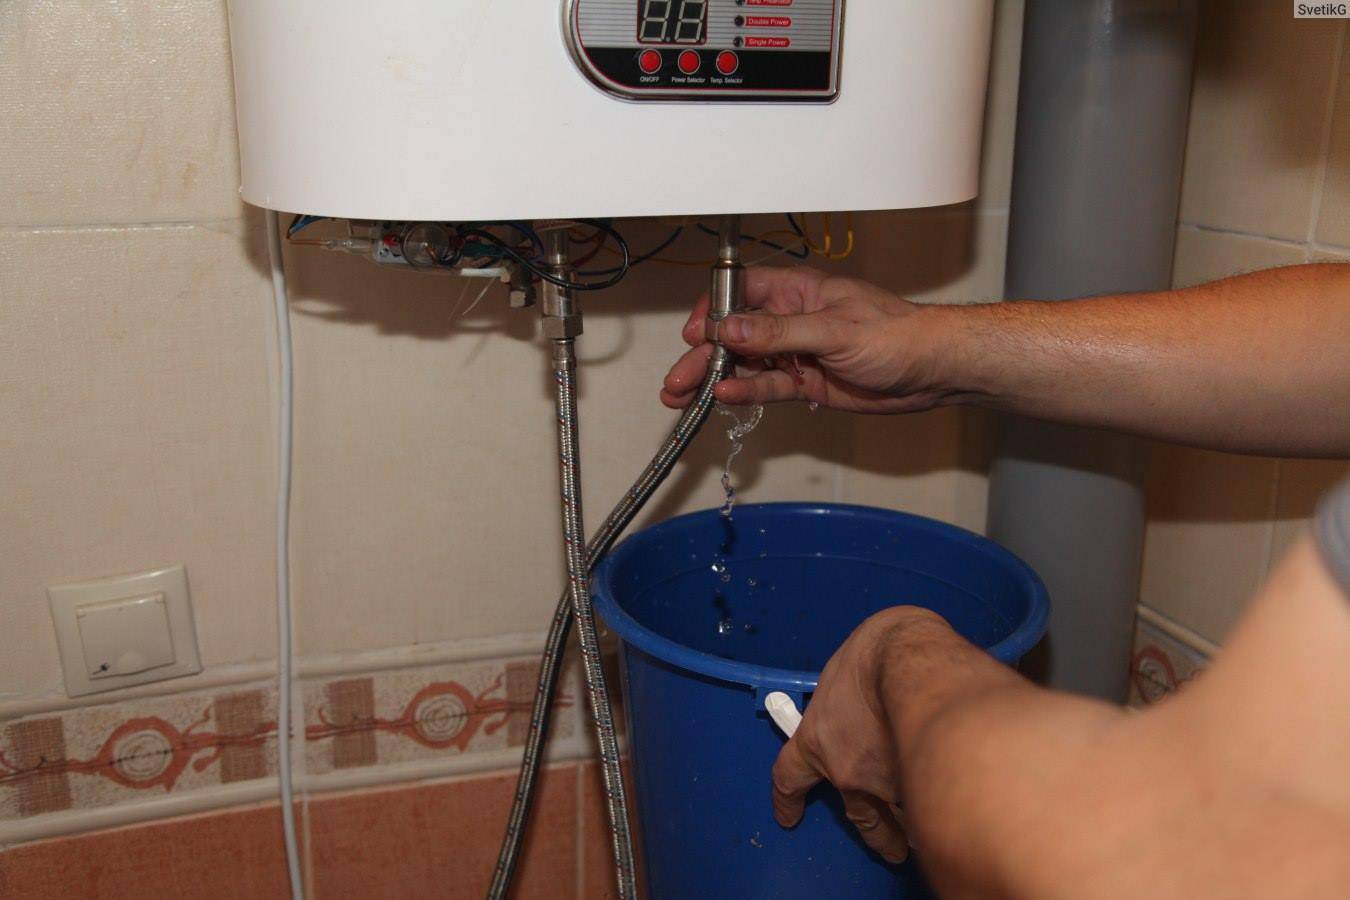 Как почистить водонагреватель (бойлер) от накипи в домашних условиях, не разбирая его